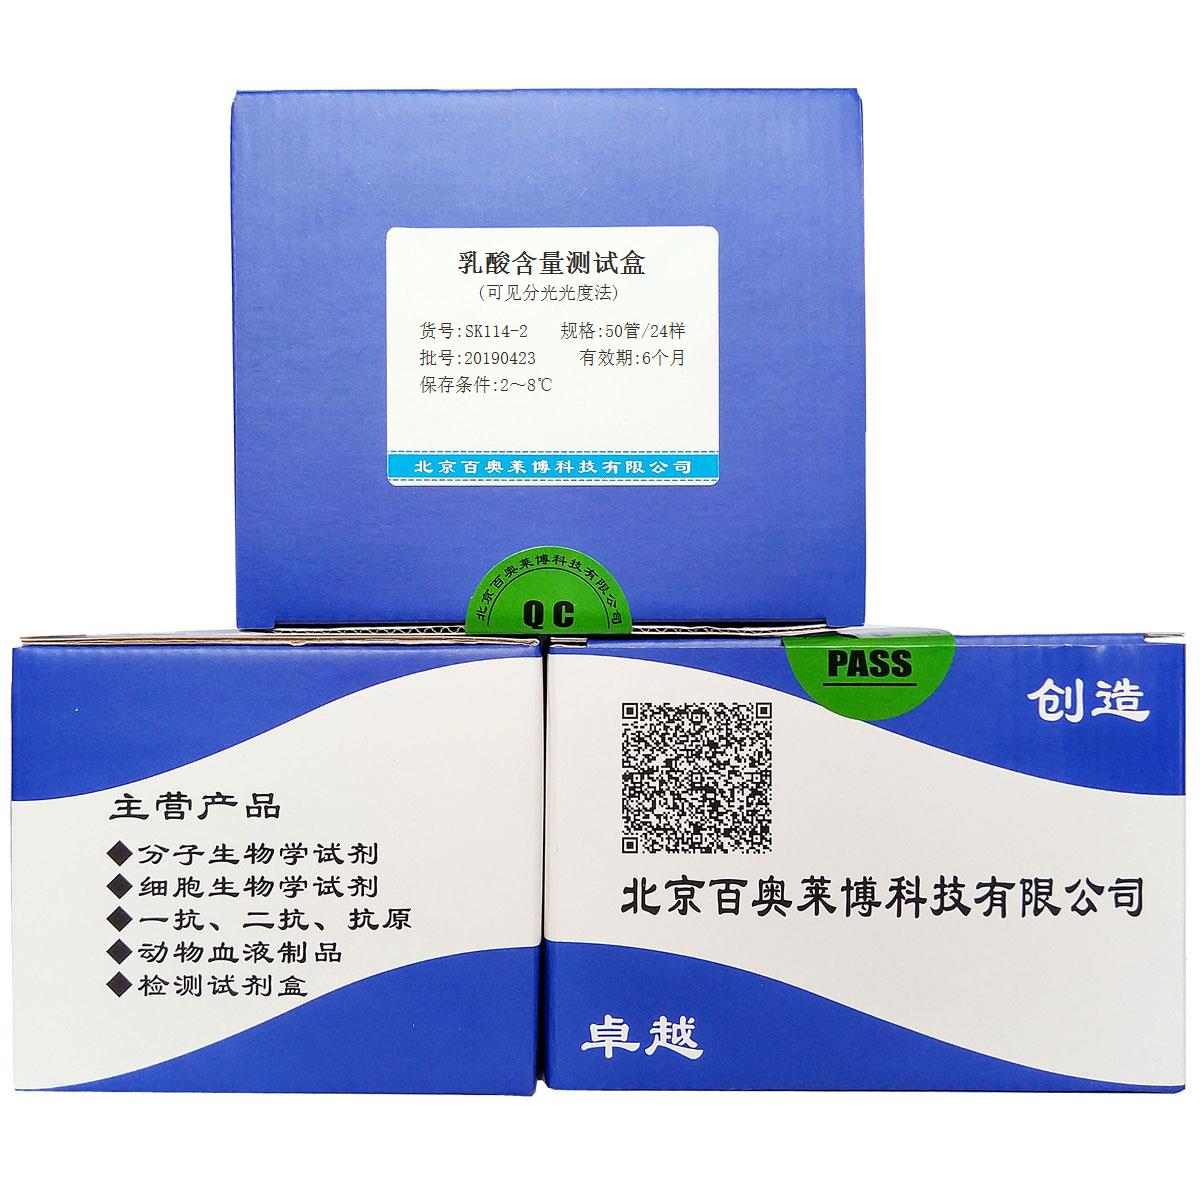 乳酸含量测试盒(可见分光光度法)北京品牌